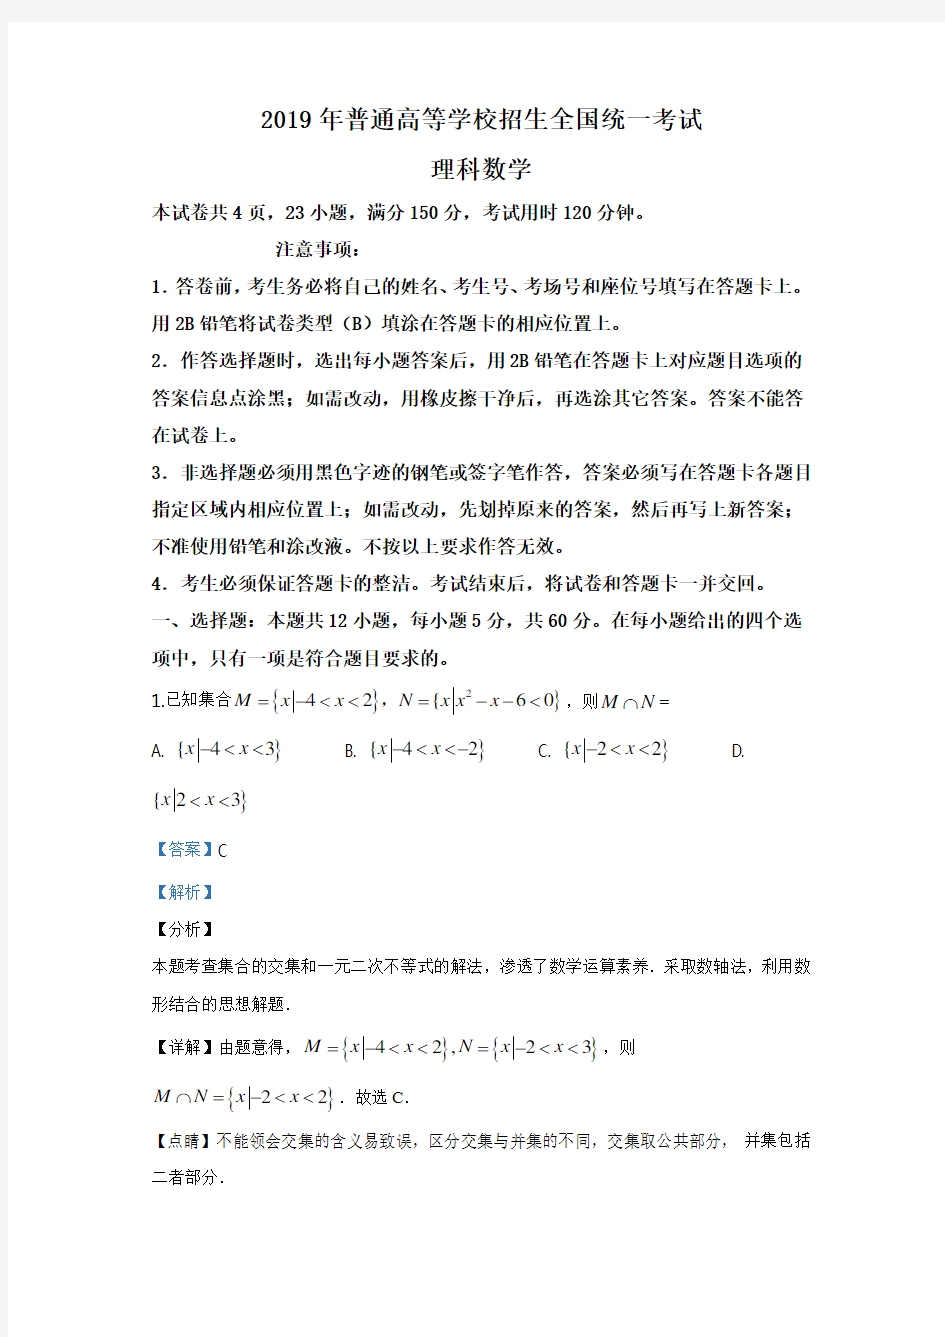 (完整word版)2019年高考理科全国1卷数学